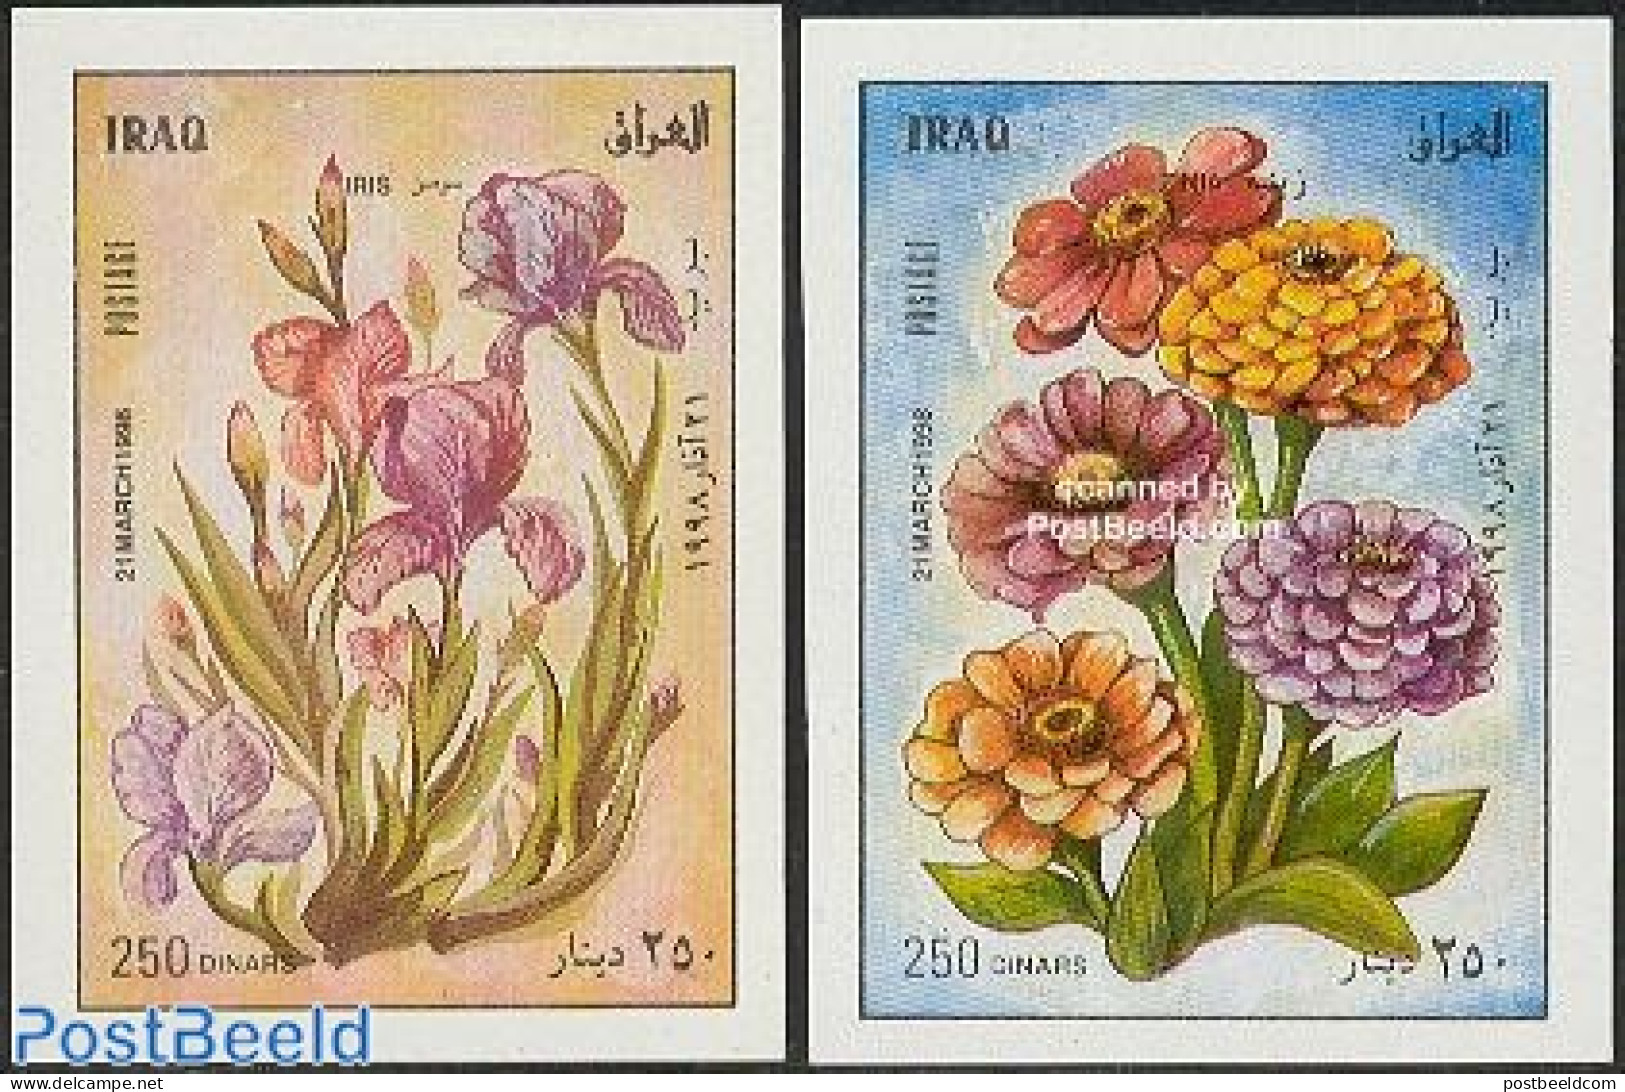 Iraq 1998 Newyear, Flowers 2 S/s, Mint NH, Nature - Flowers & Plants - Iraq